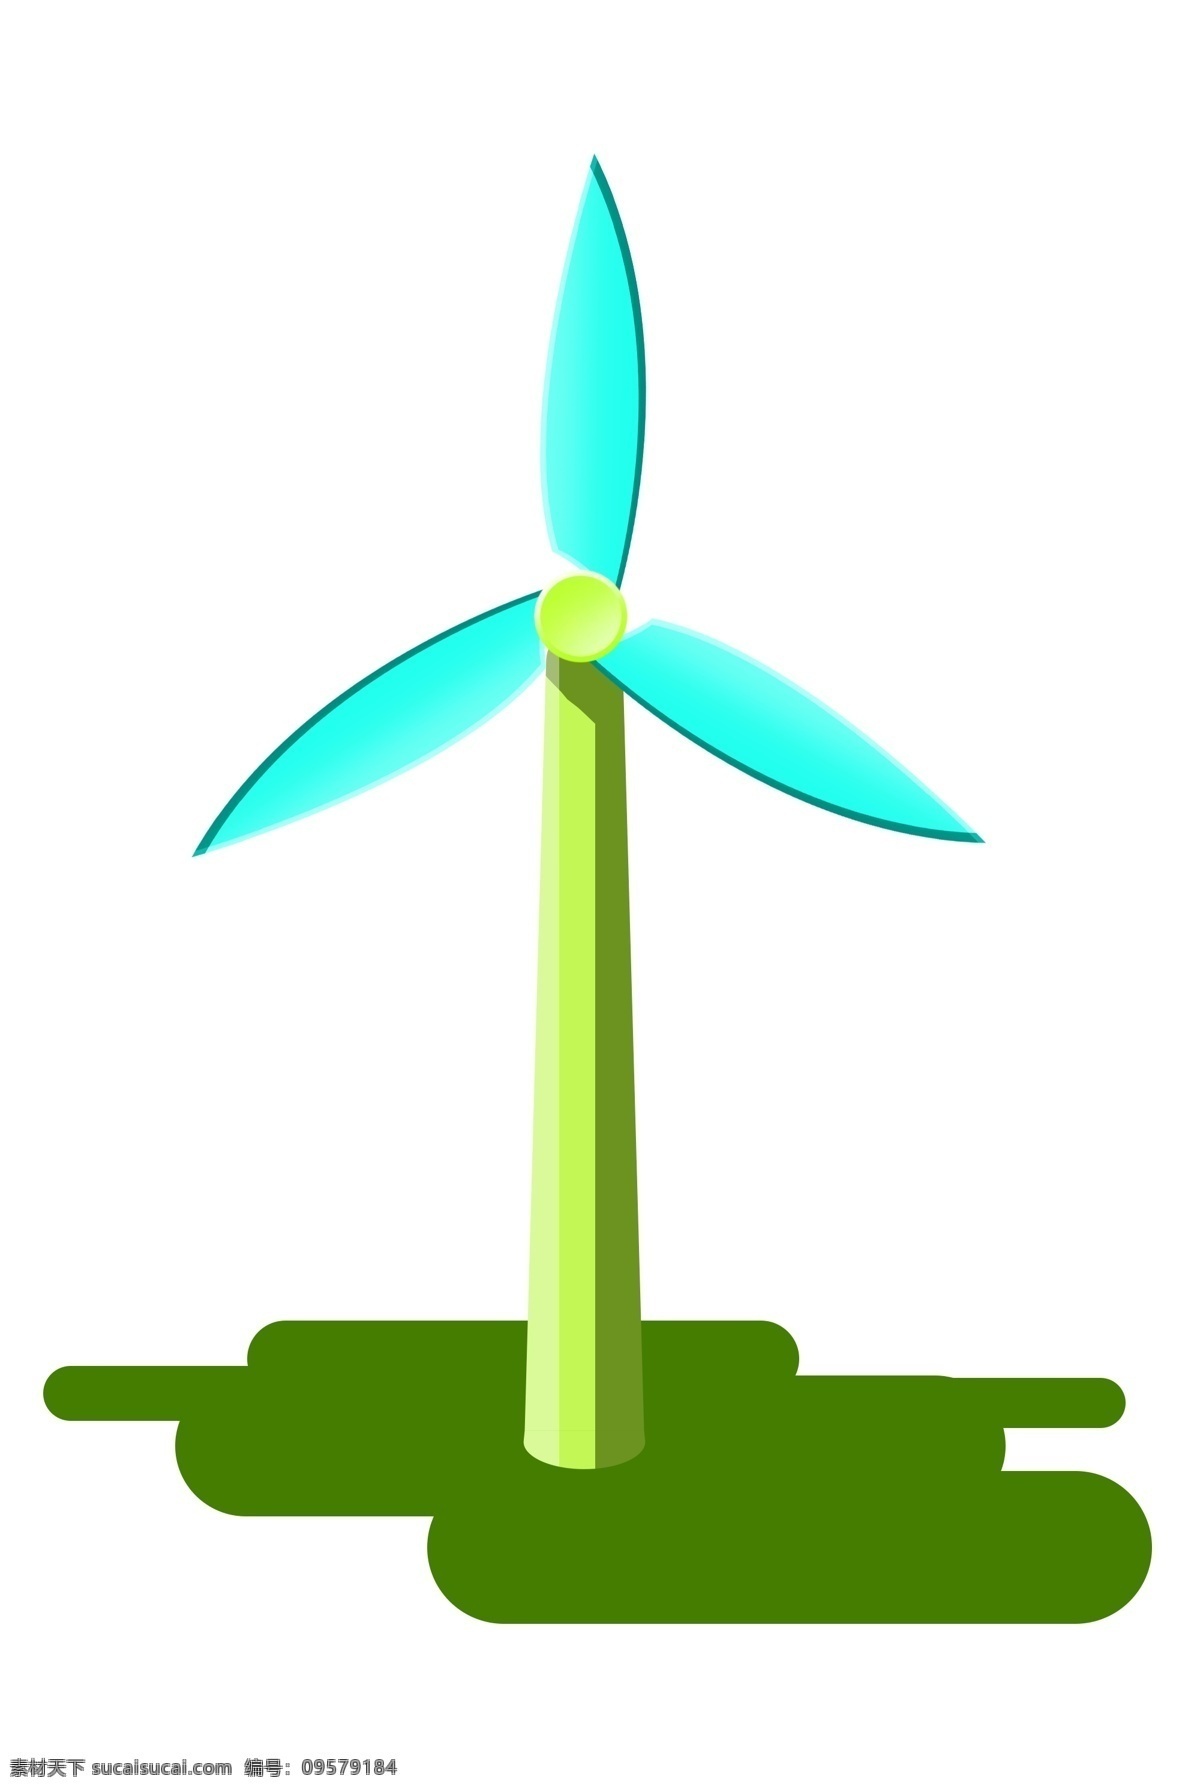 绿色 发电 风车 插画 绿色的风车 风力发电风车 蓝色的风车 立体创意风车 环保节能 绿色环保风车